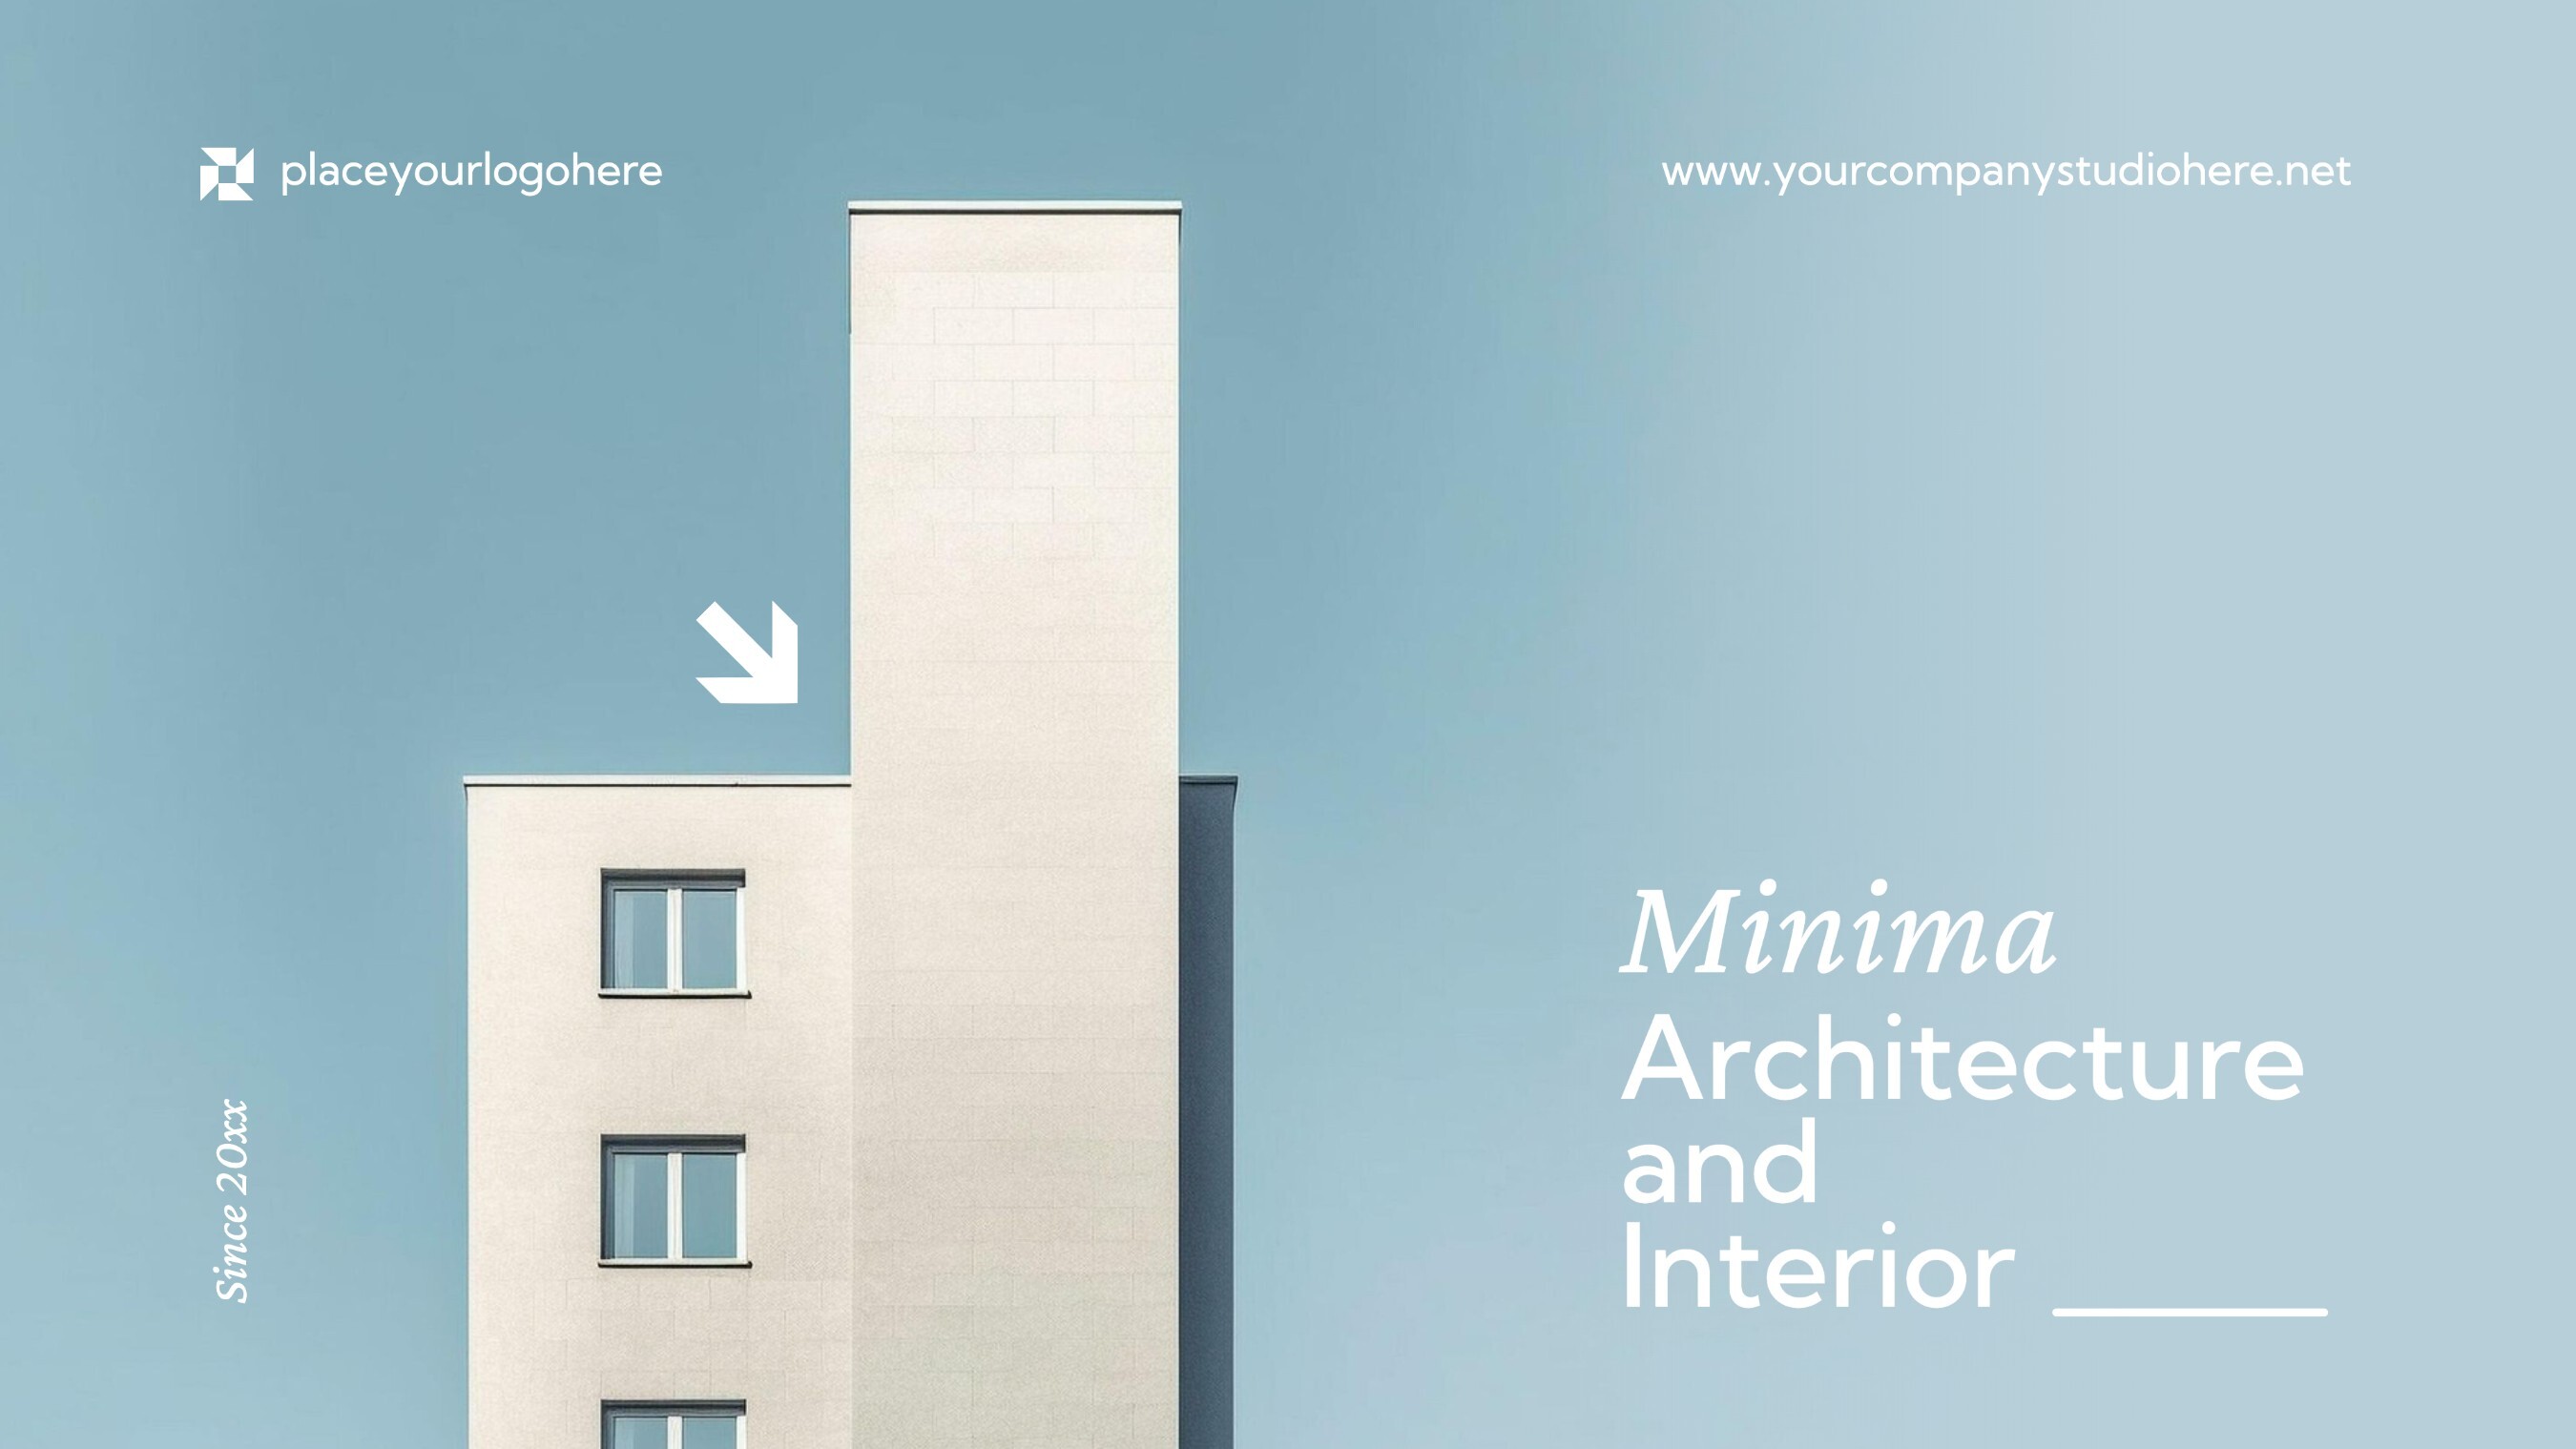 Minimalist Architecture and Interior Studio Presentation Template